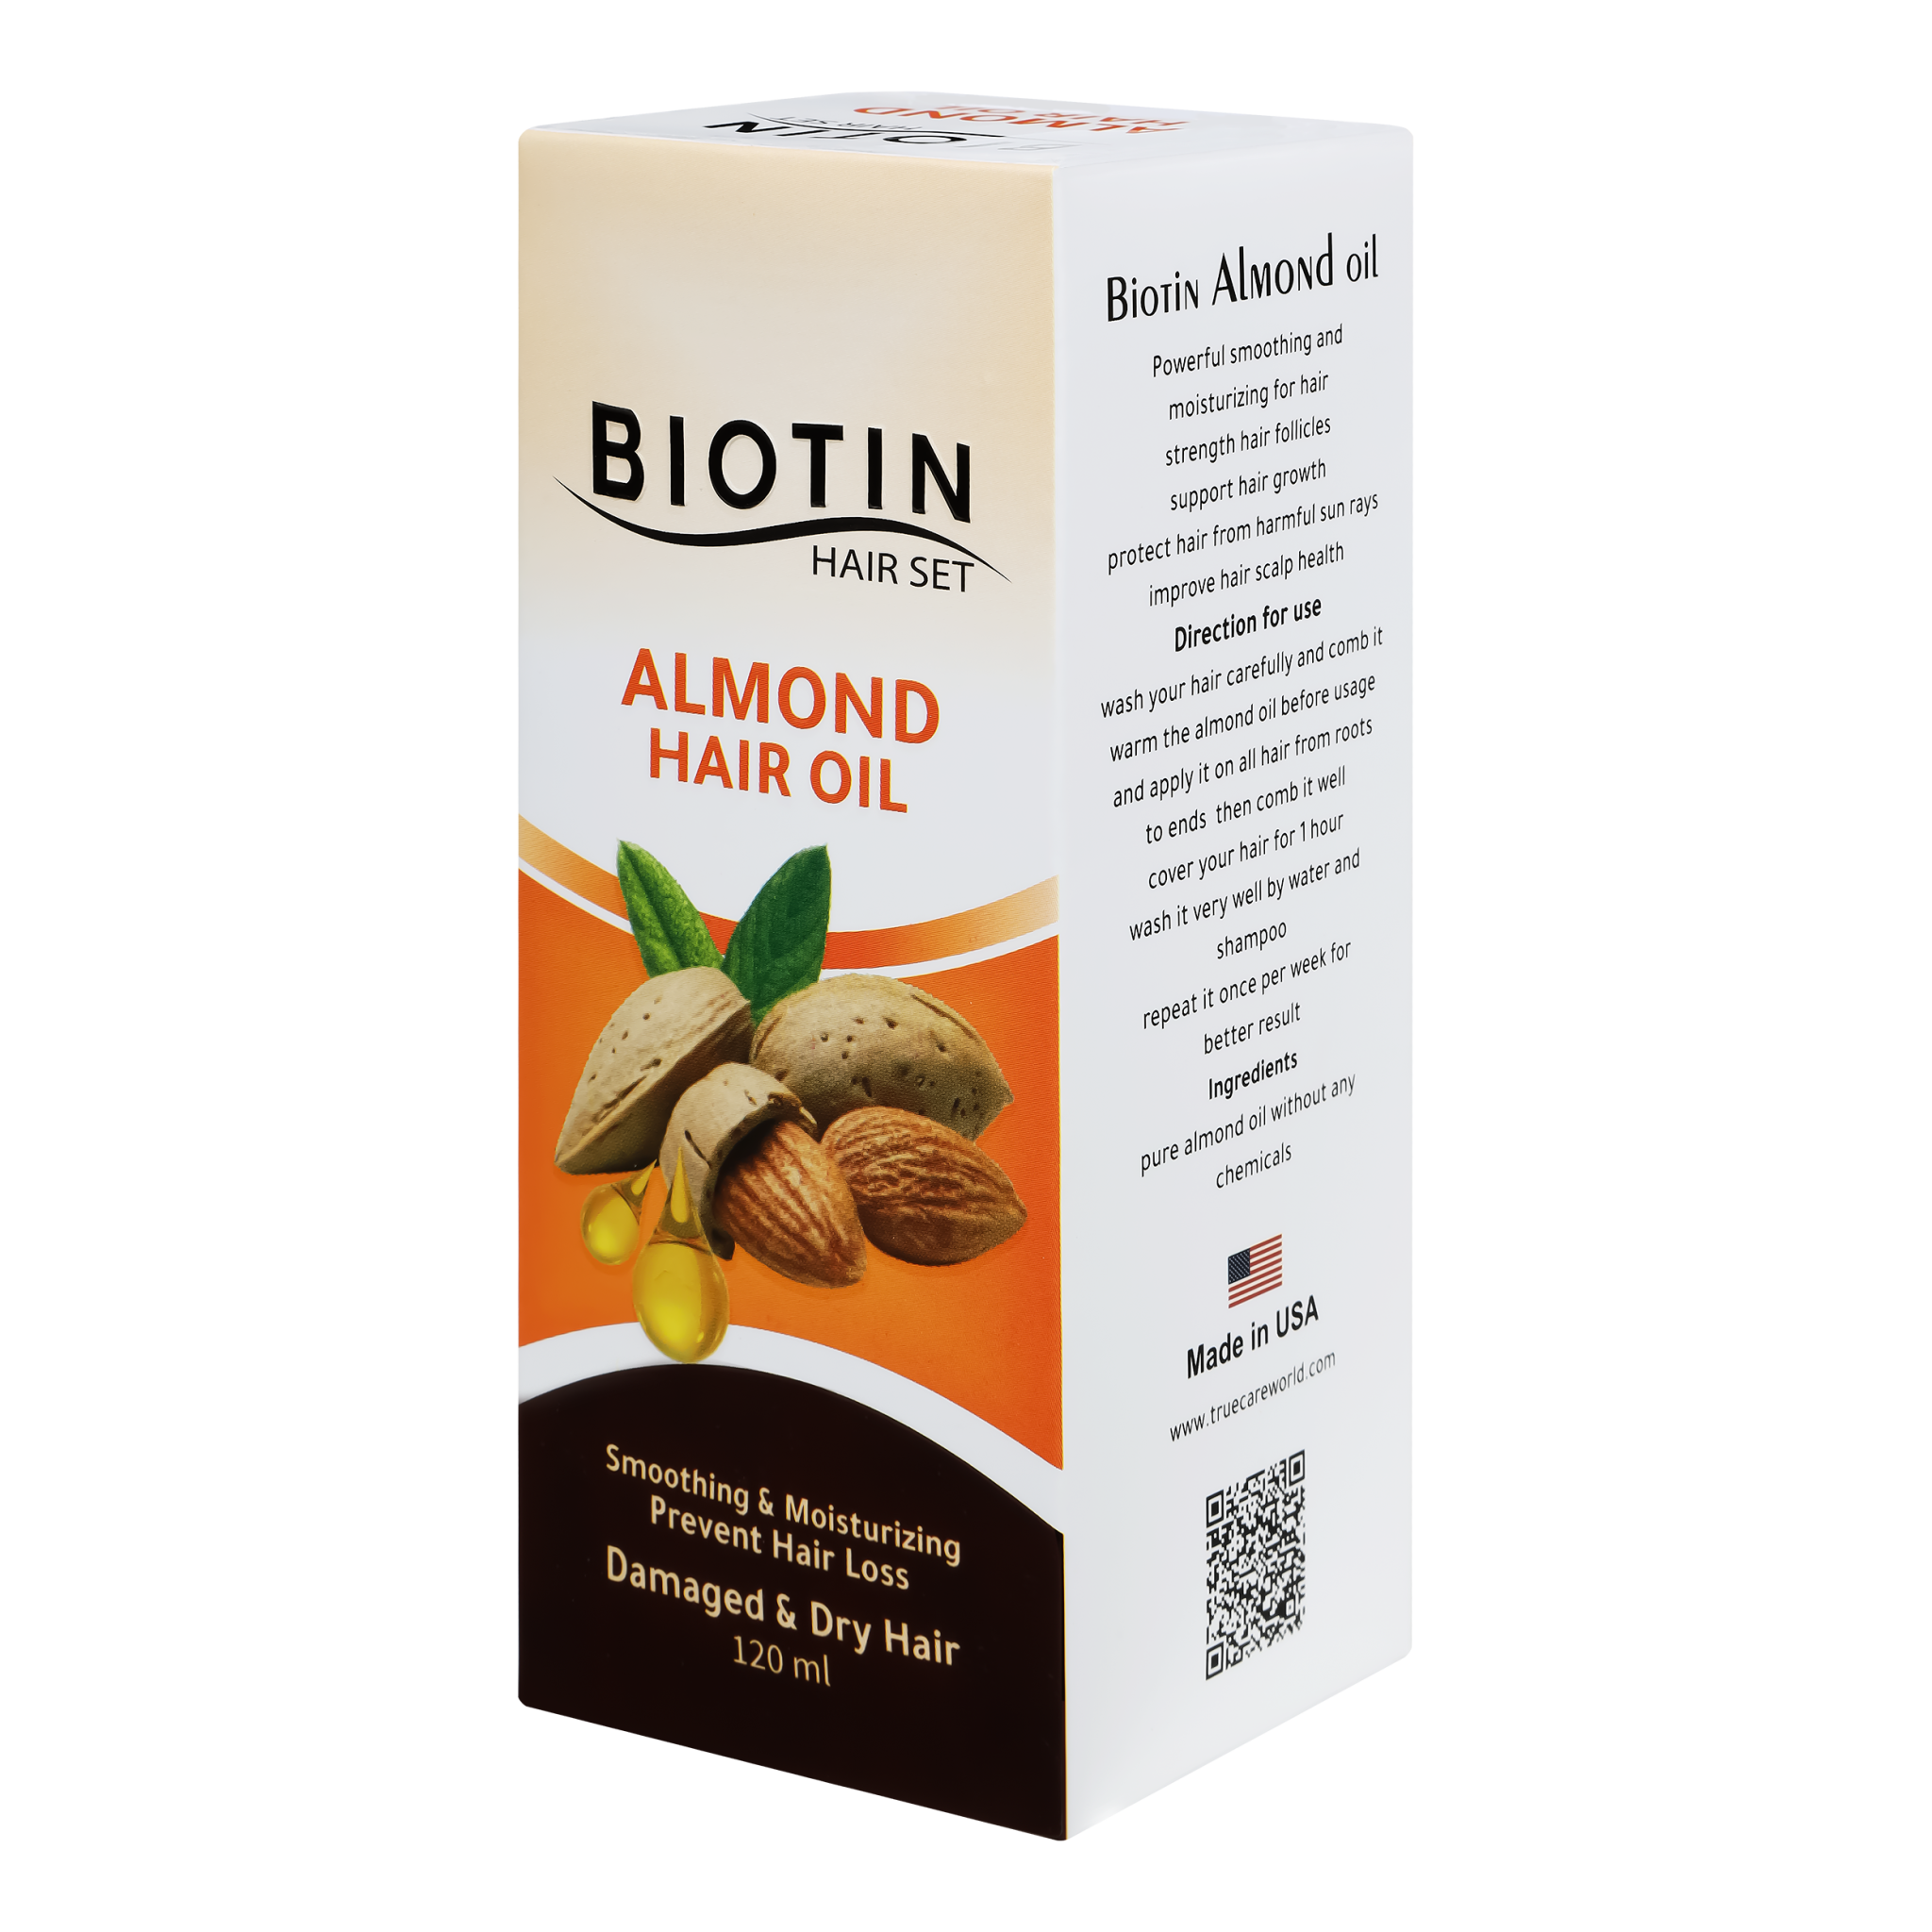 Biotin Hair Set, Almond hair oil, for smoothing, moisturizing & prevent hair  loss, 120ml | True Care World